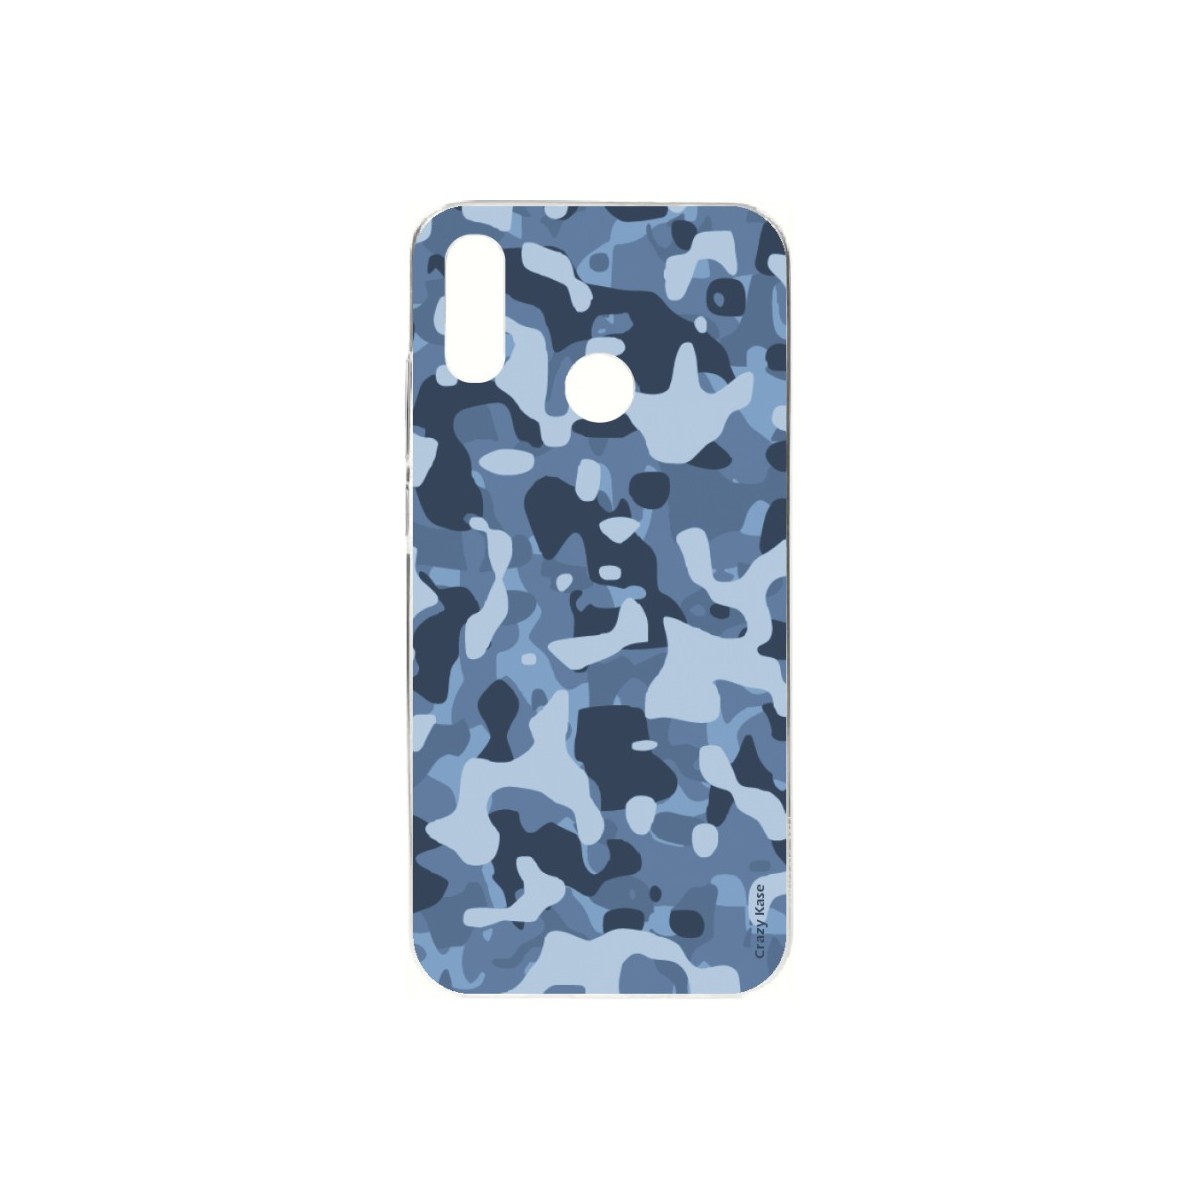 Coque Huawei P Smart 2019 souple Camouflage militaire bleu Crazy Kase